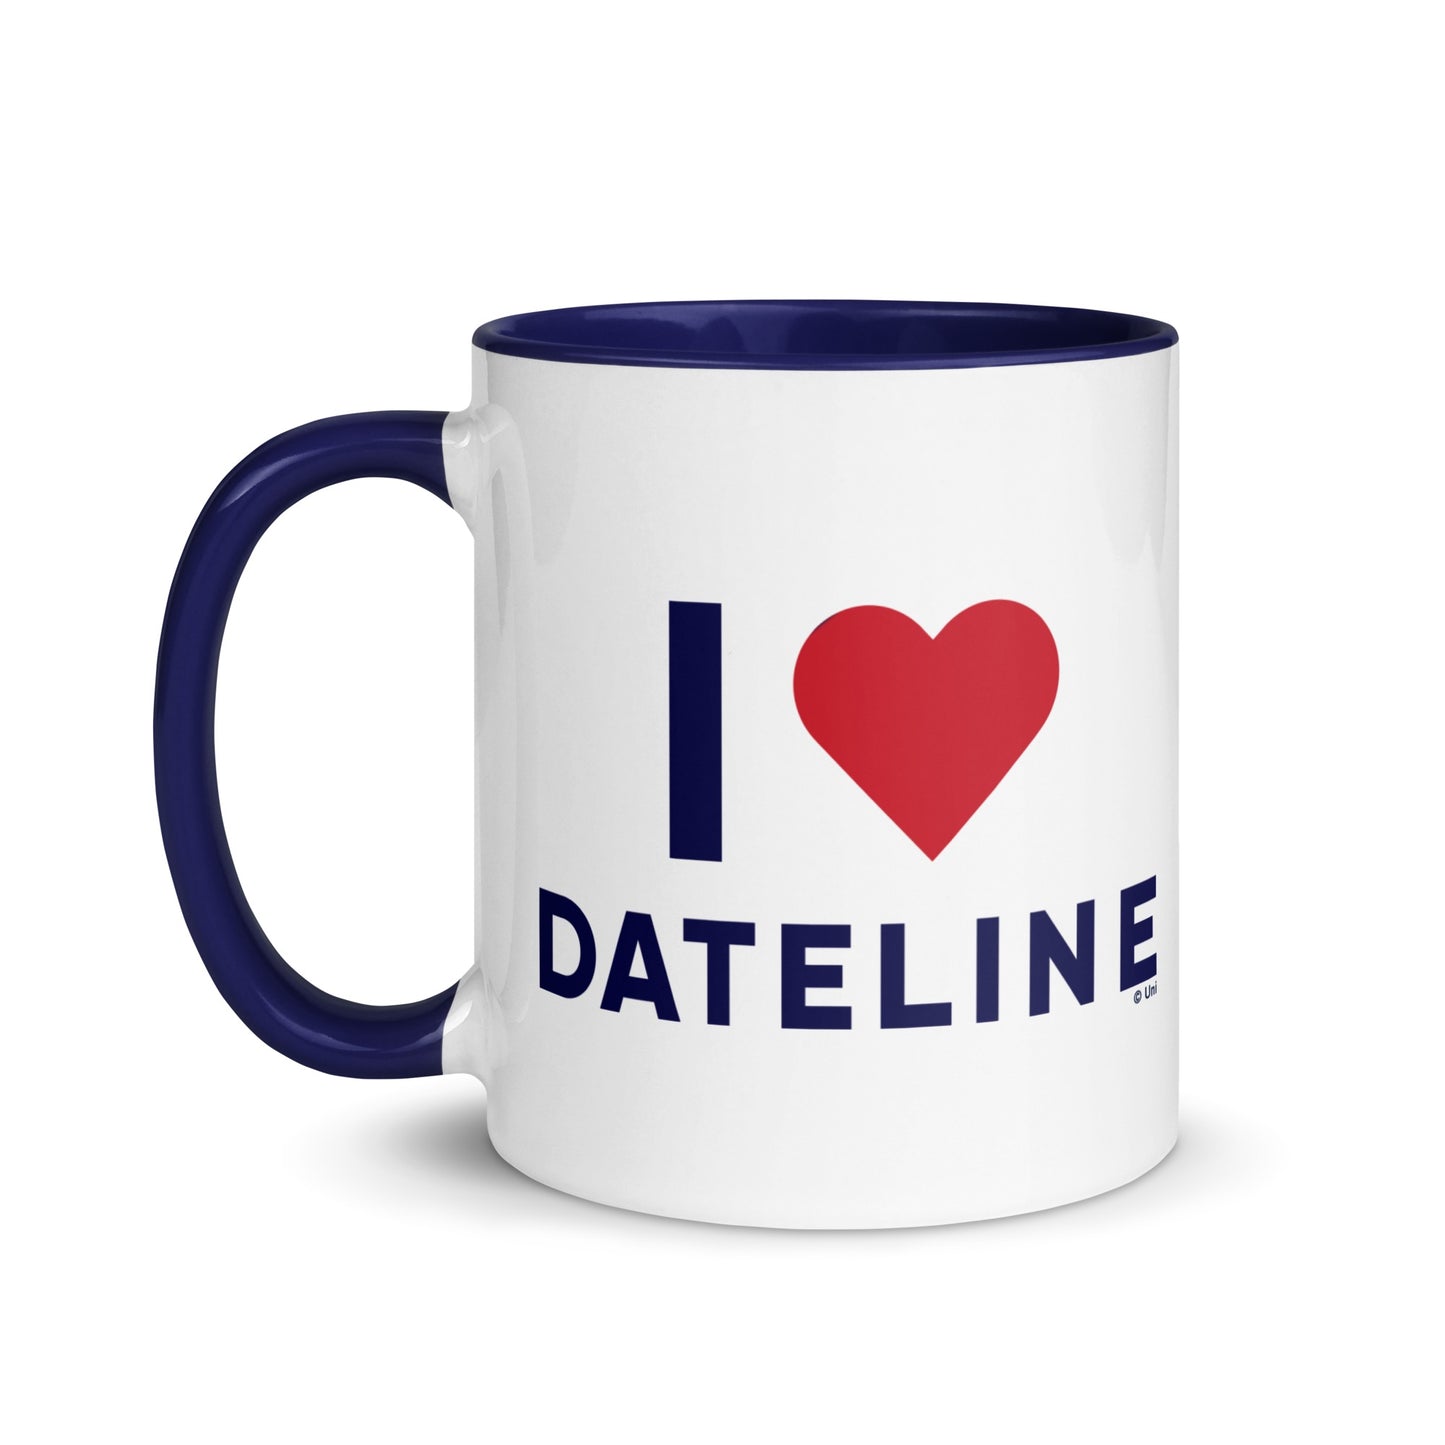 DATELINE I Heart DATELINE Two-Toned Mug